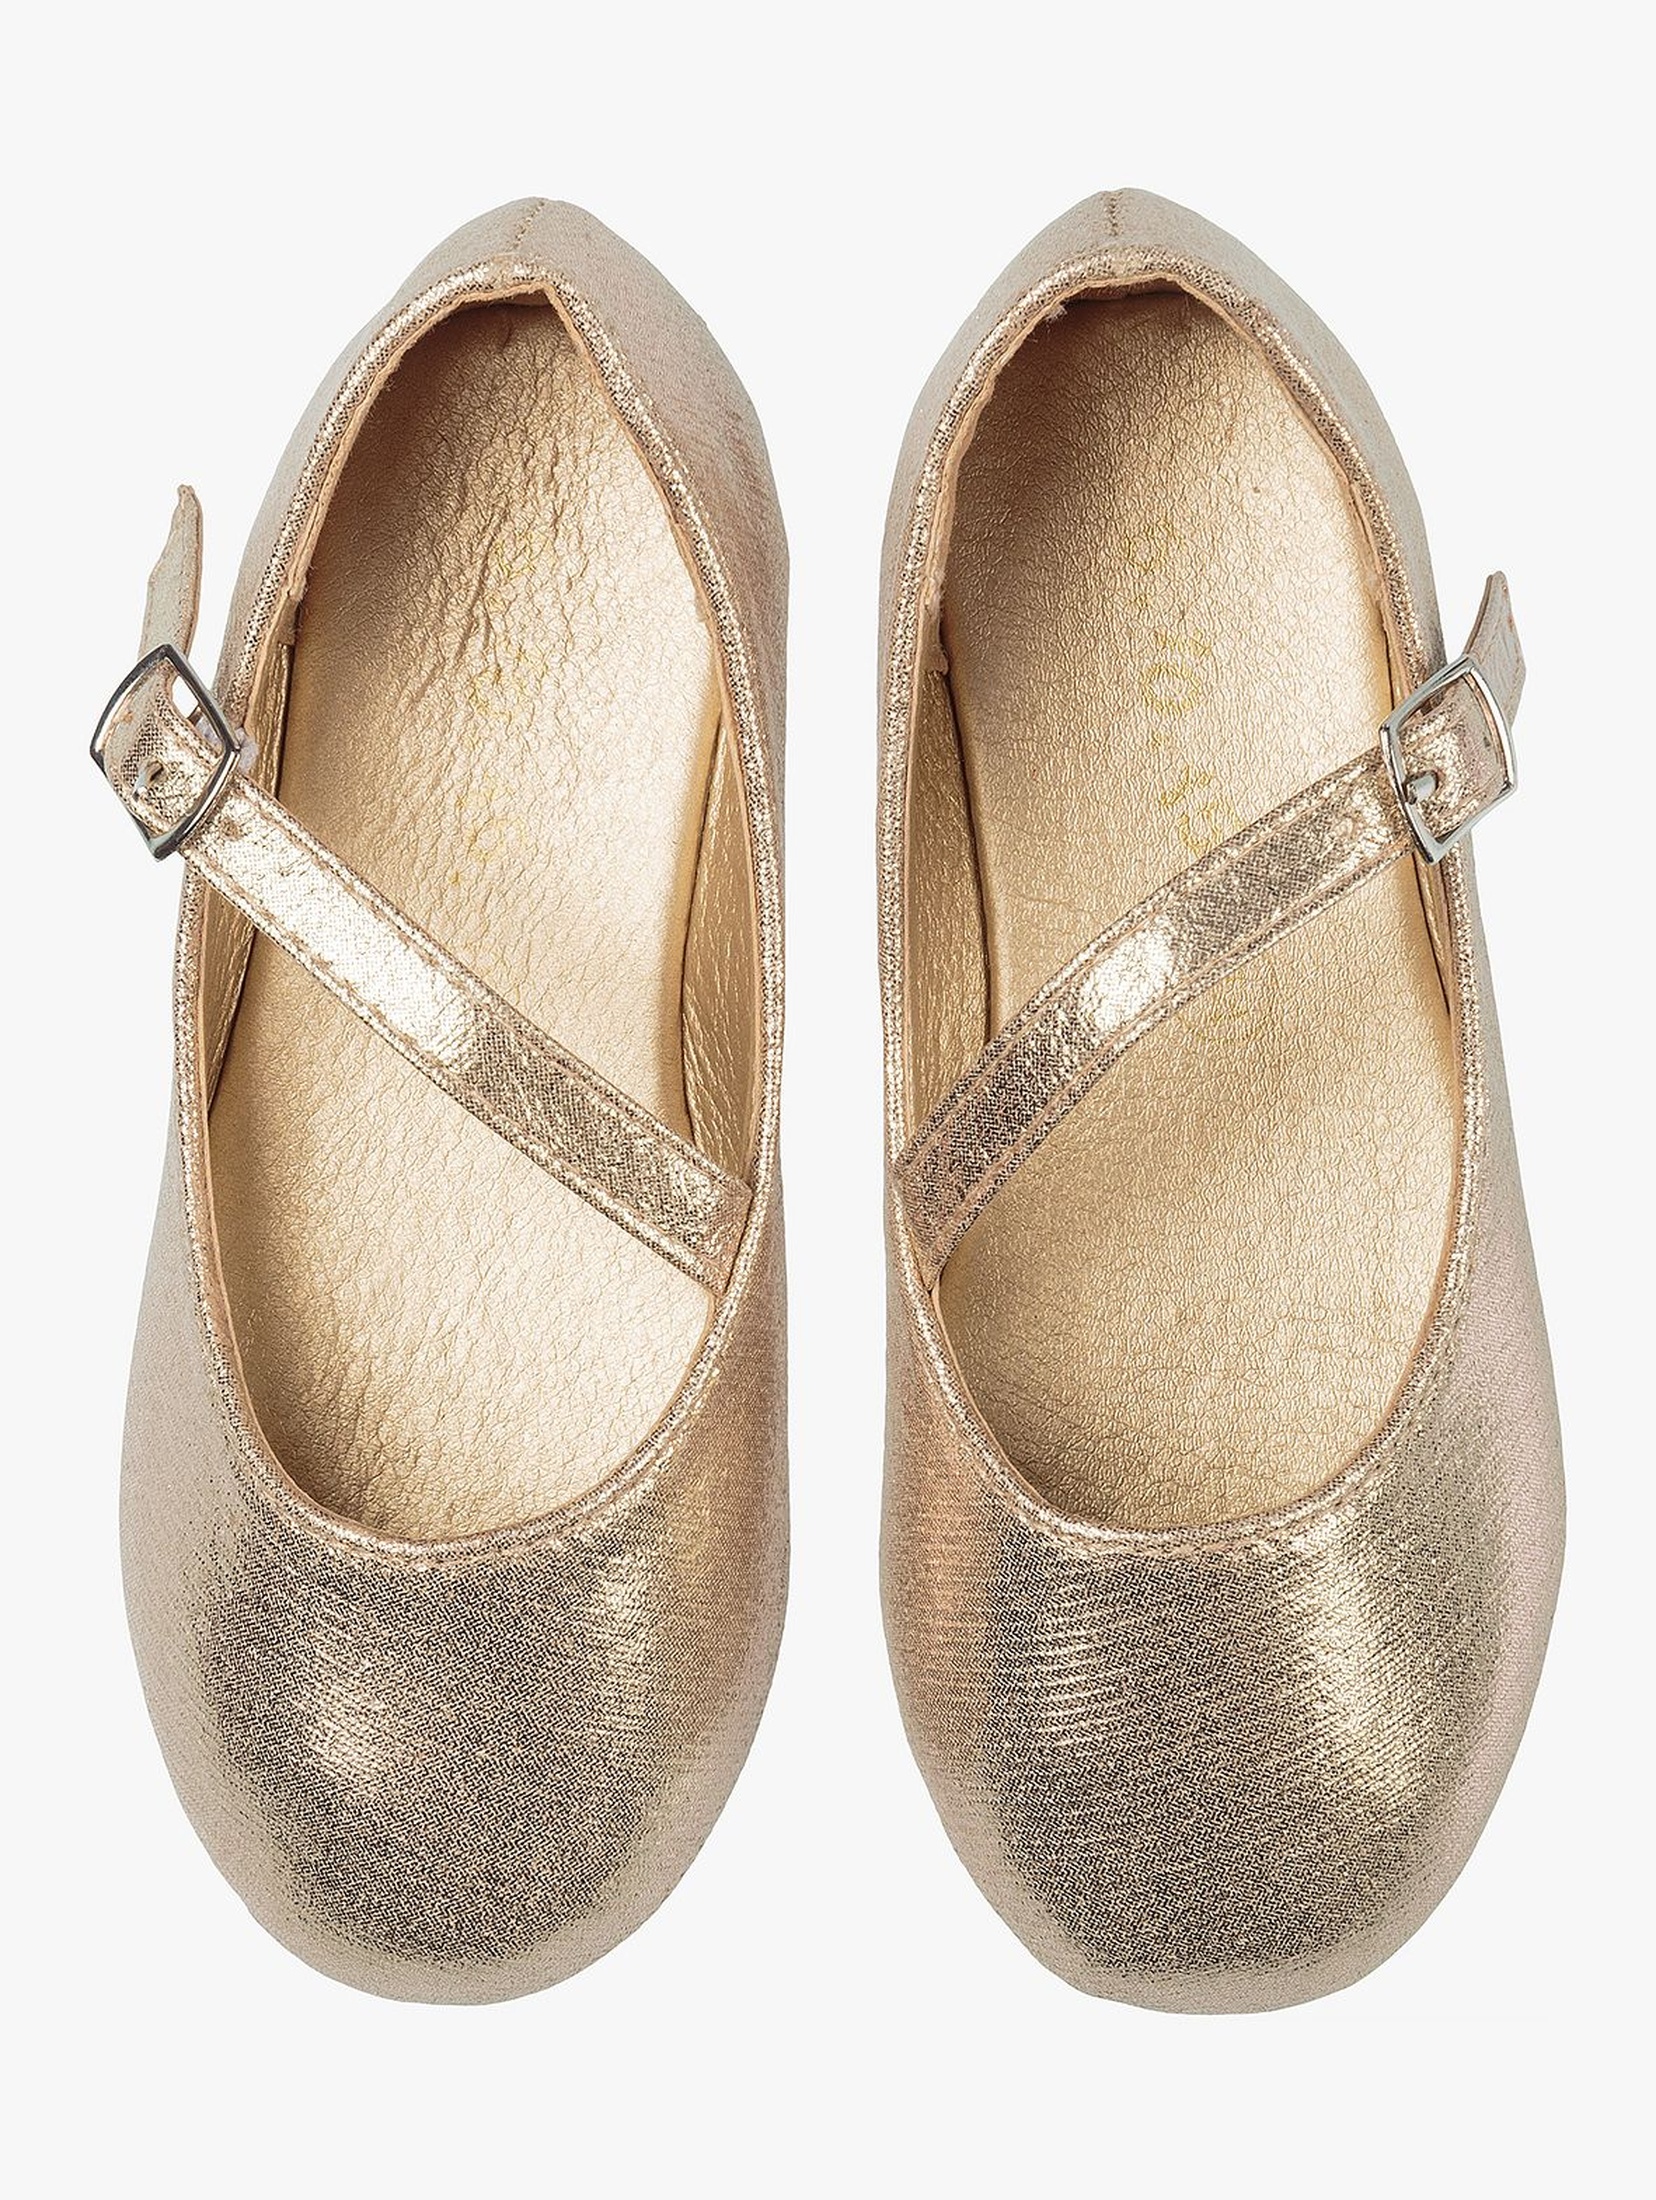 Buty dla dziewczynki - złote baleriny